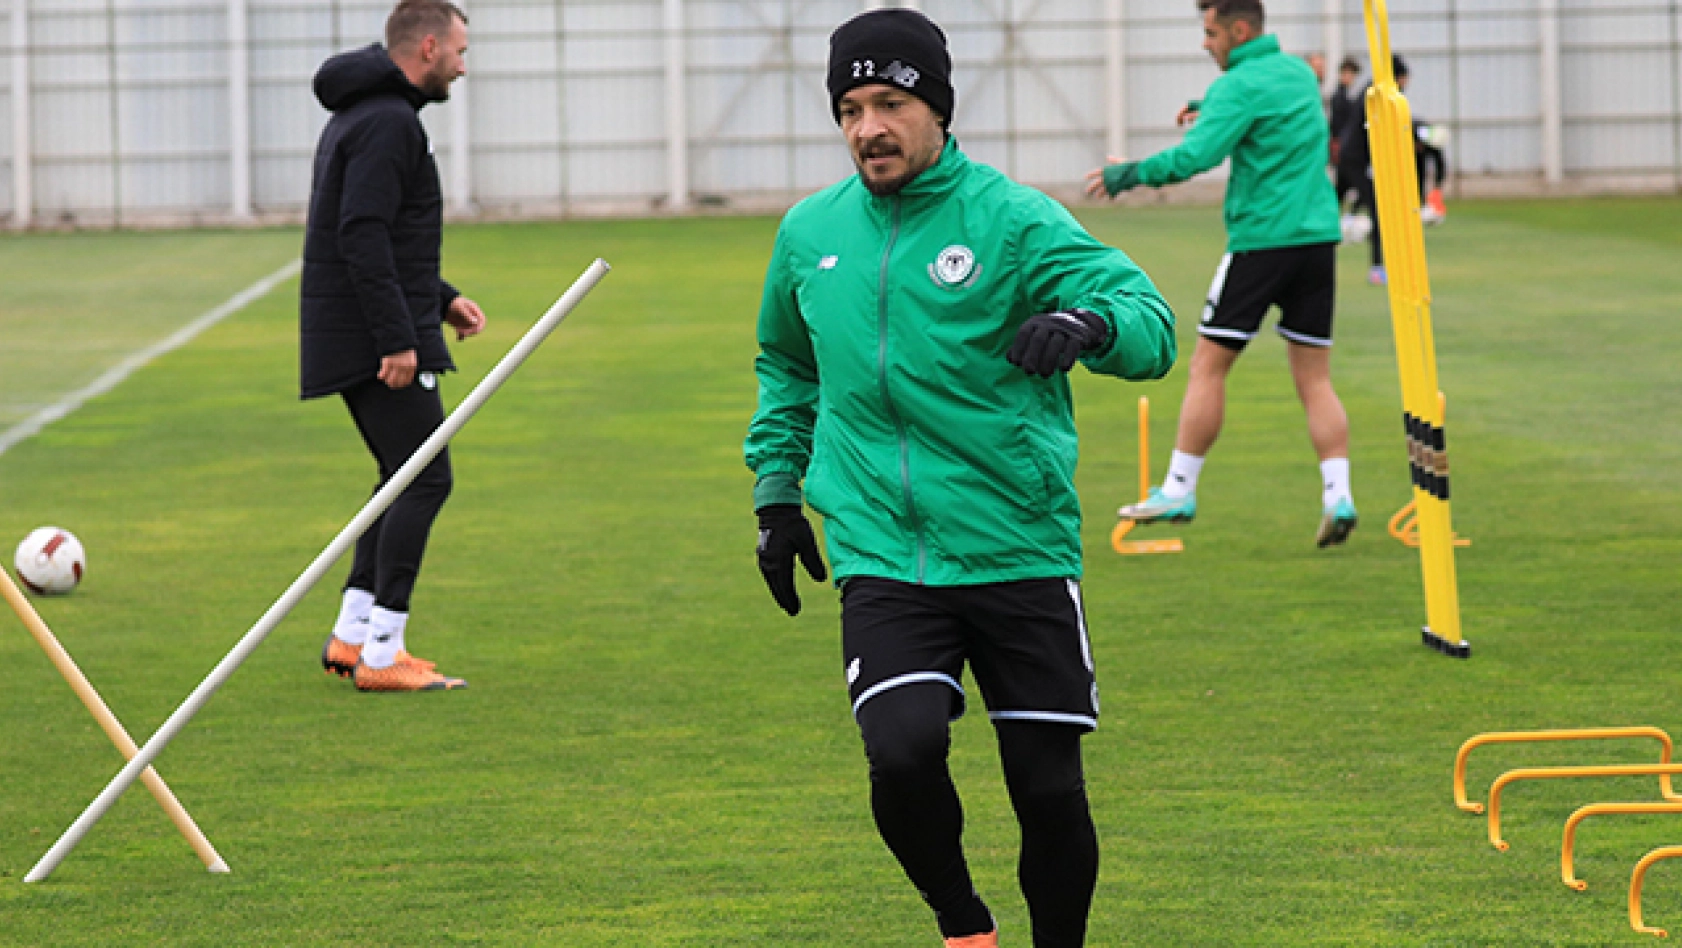 Tümosan Konyaspor, Sivasspor Maçı Hazırlıklarını Sürdürüyor